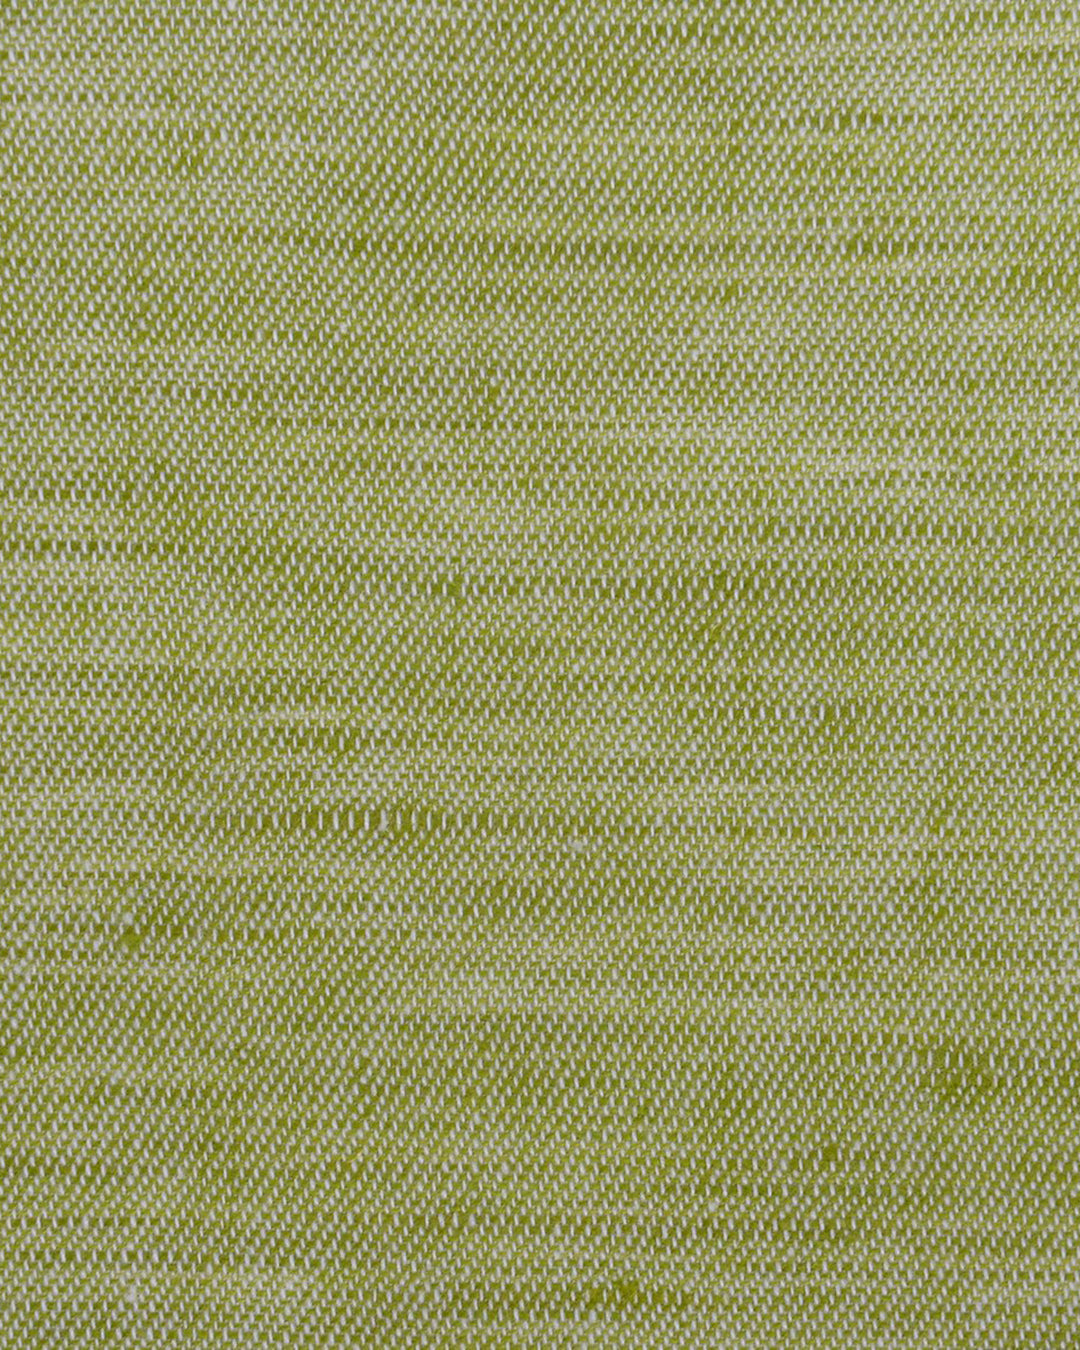 Cotton Linen: Light Green Chambray Shirt